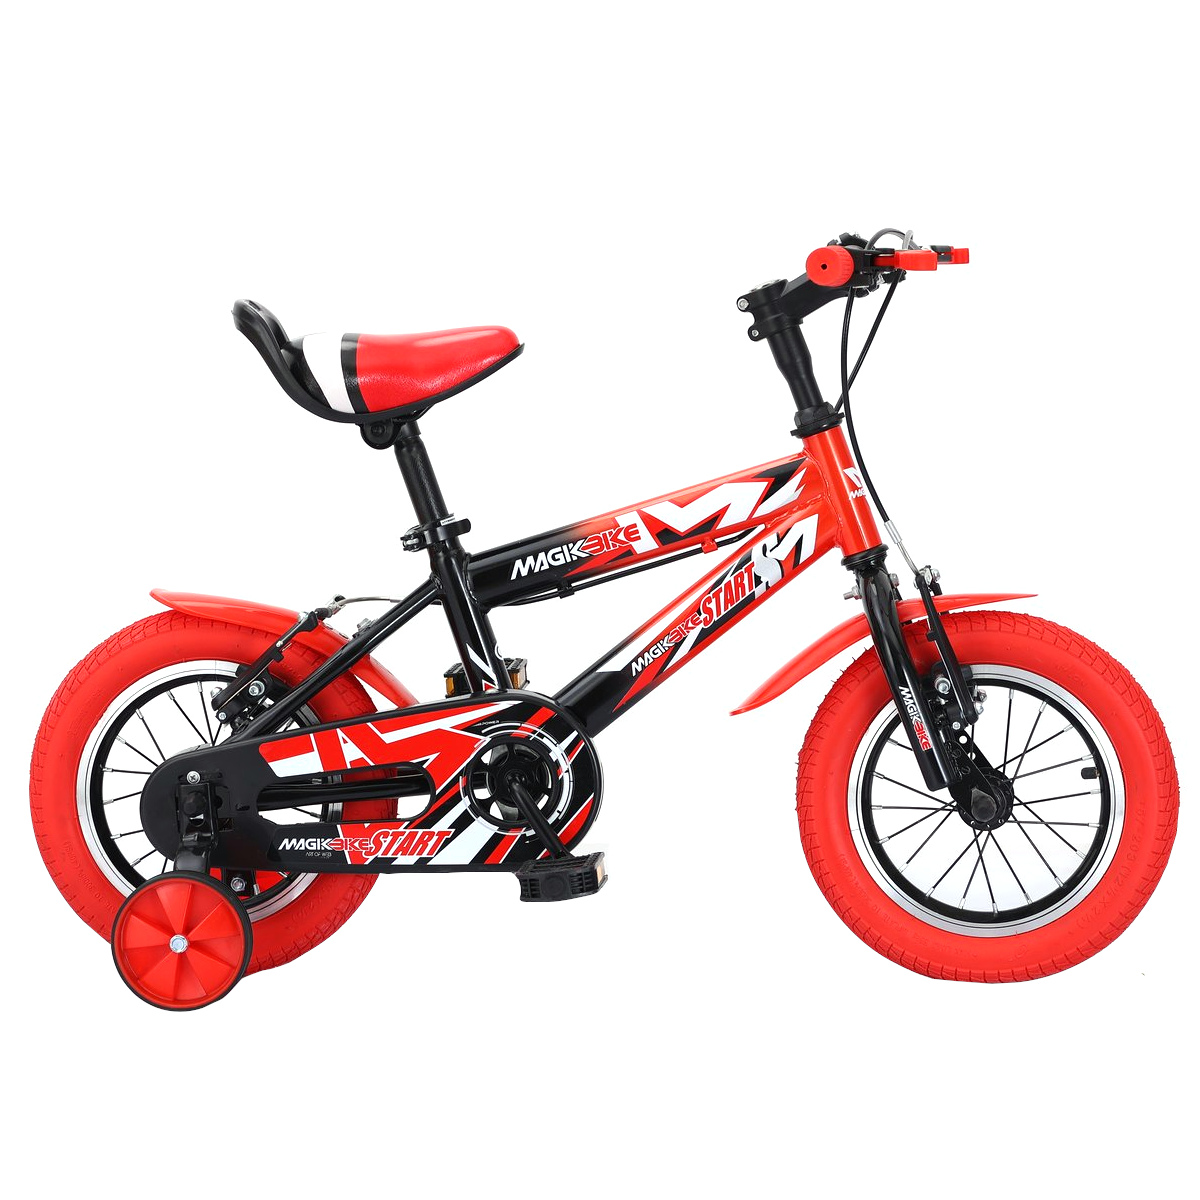 Bicicleta Niños 12 Pulgadas Magikbike Start 3-5 Años - rojo - 